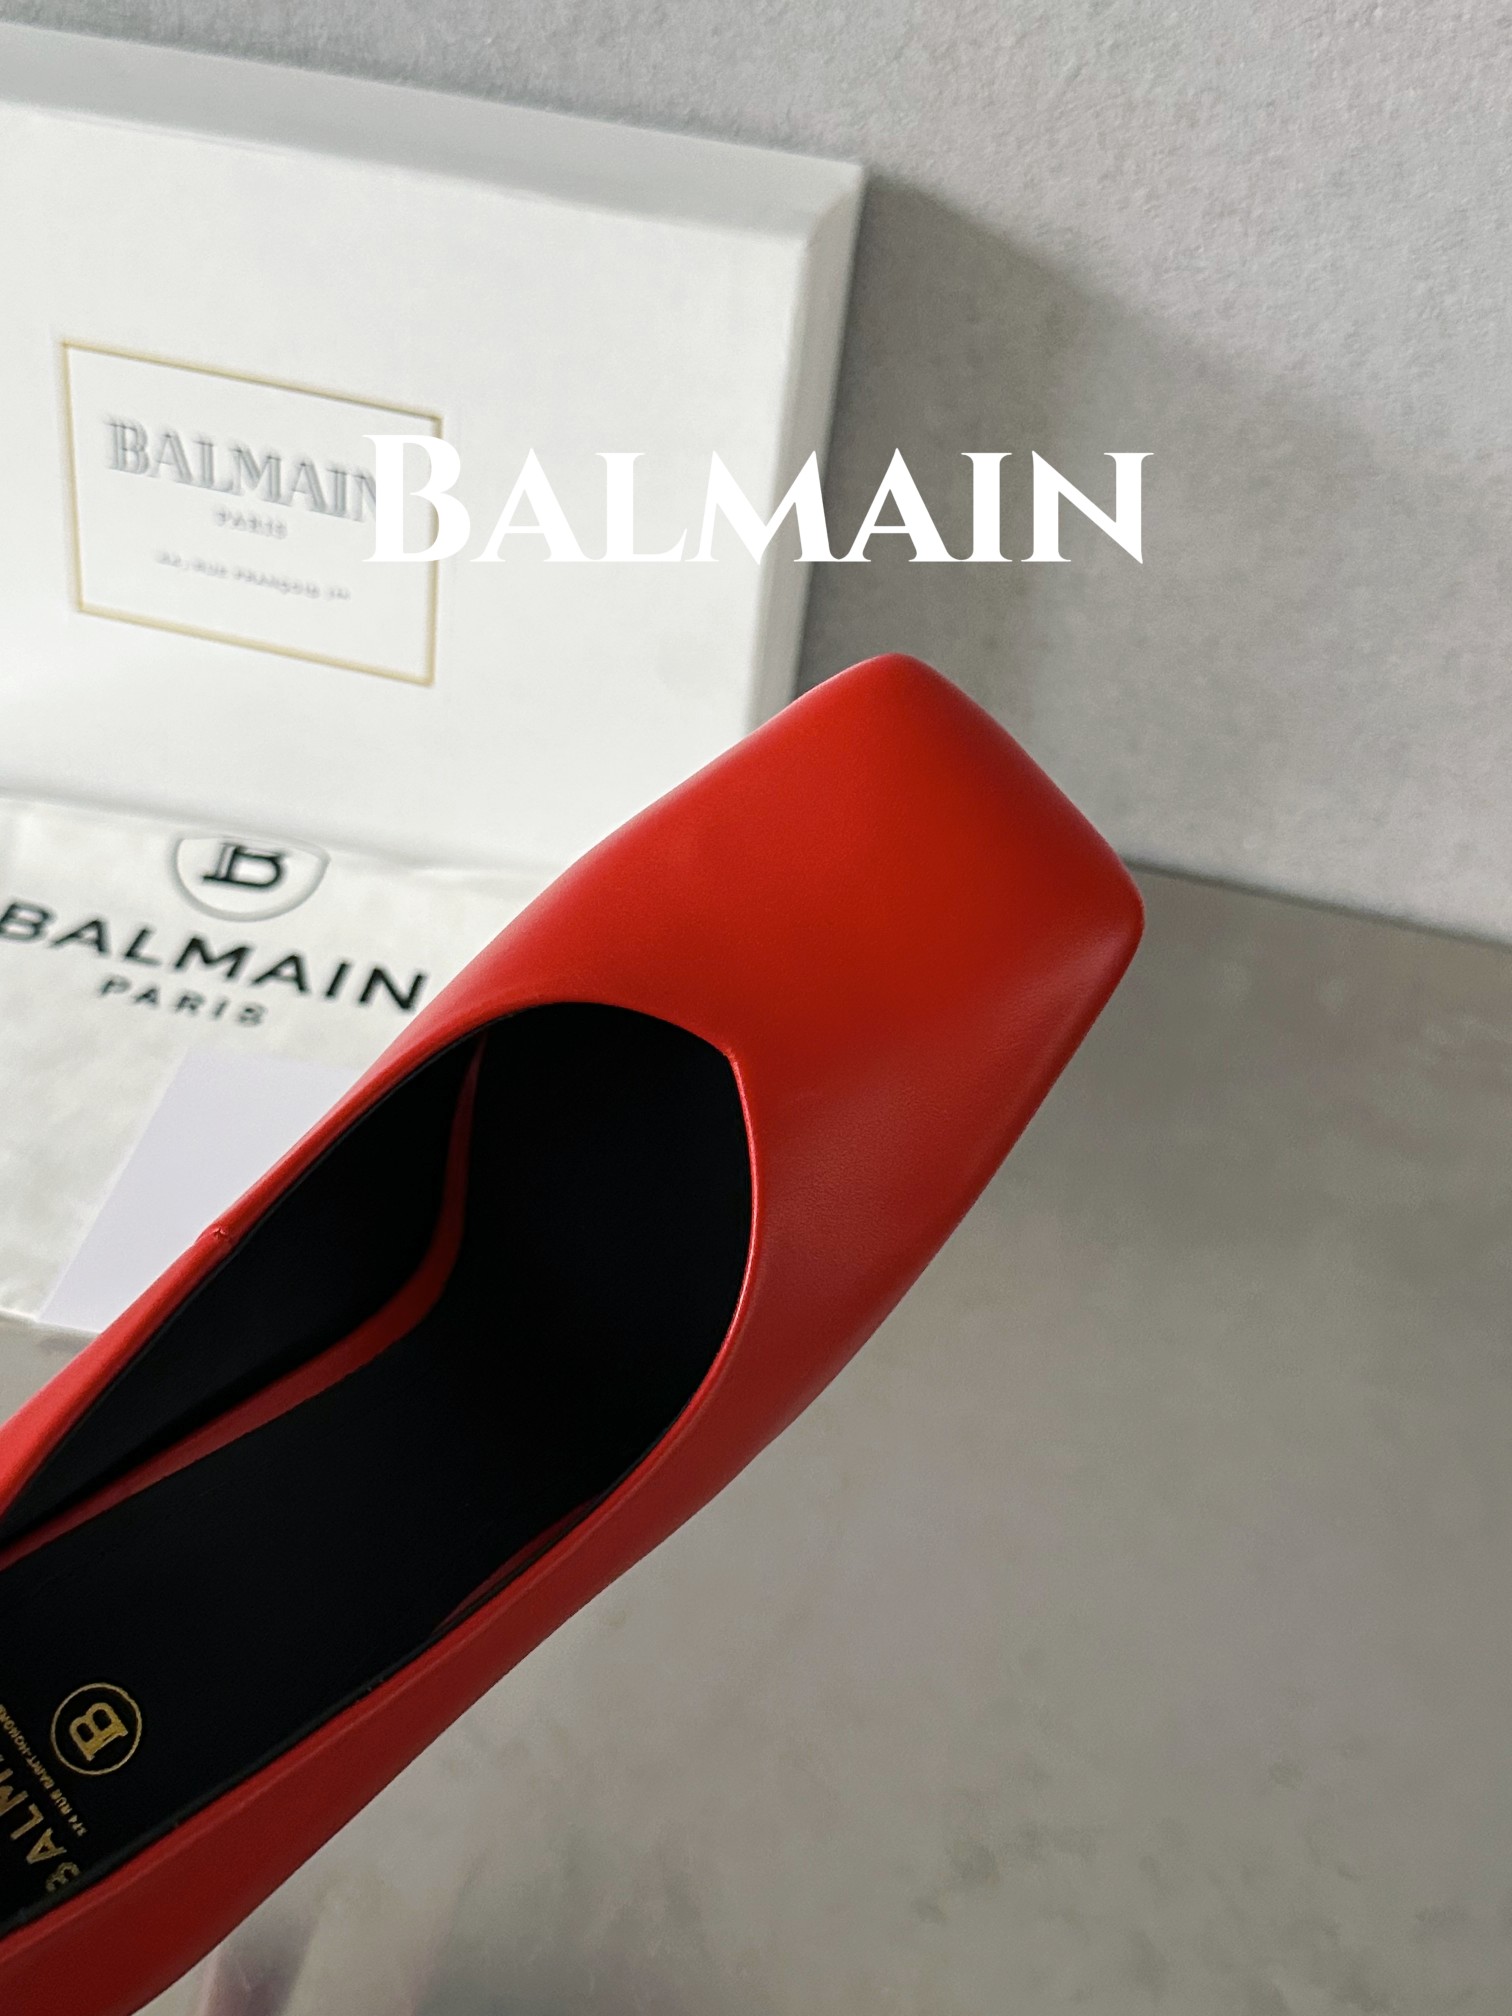 Balmain巴尔曼巴尔曼方头酒杯跟单鞋此款彩色皮革酒杯跟方头会标图案海外订购原版1:1完美复刻！历时三